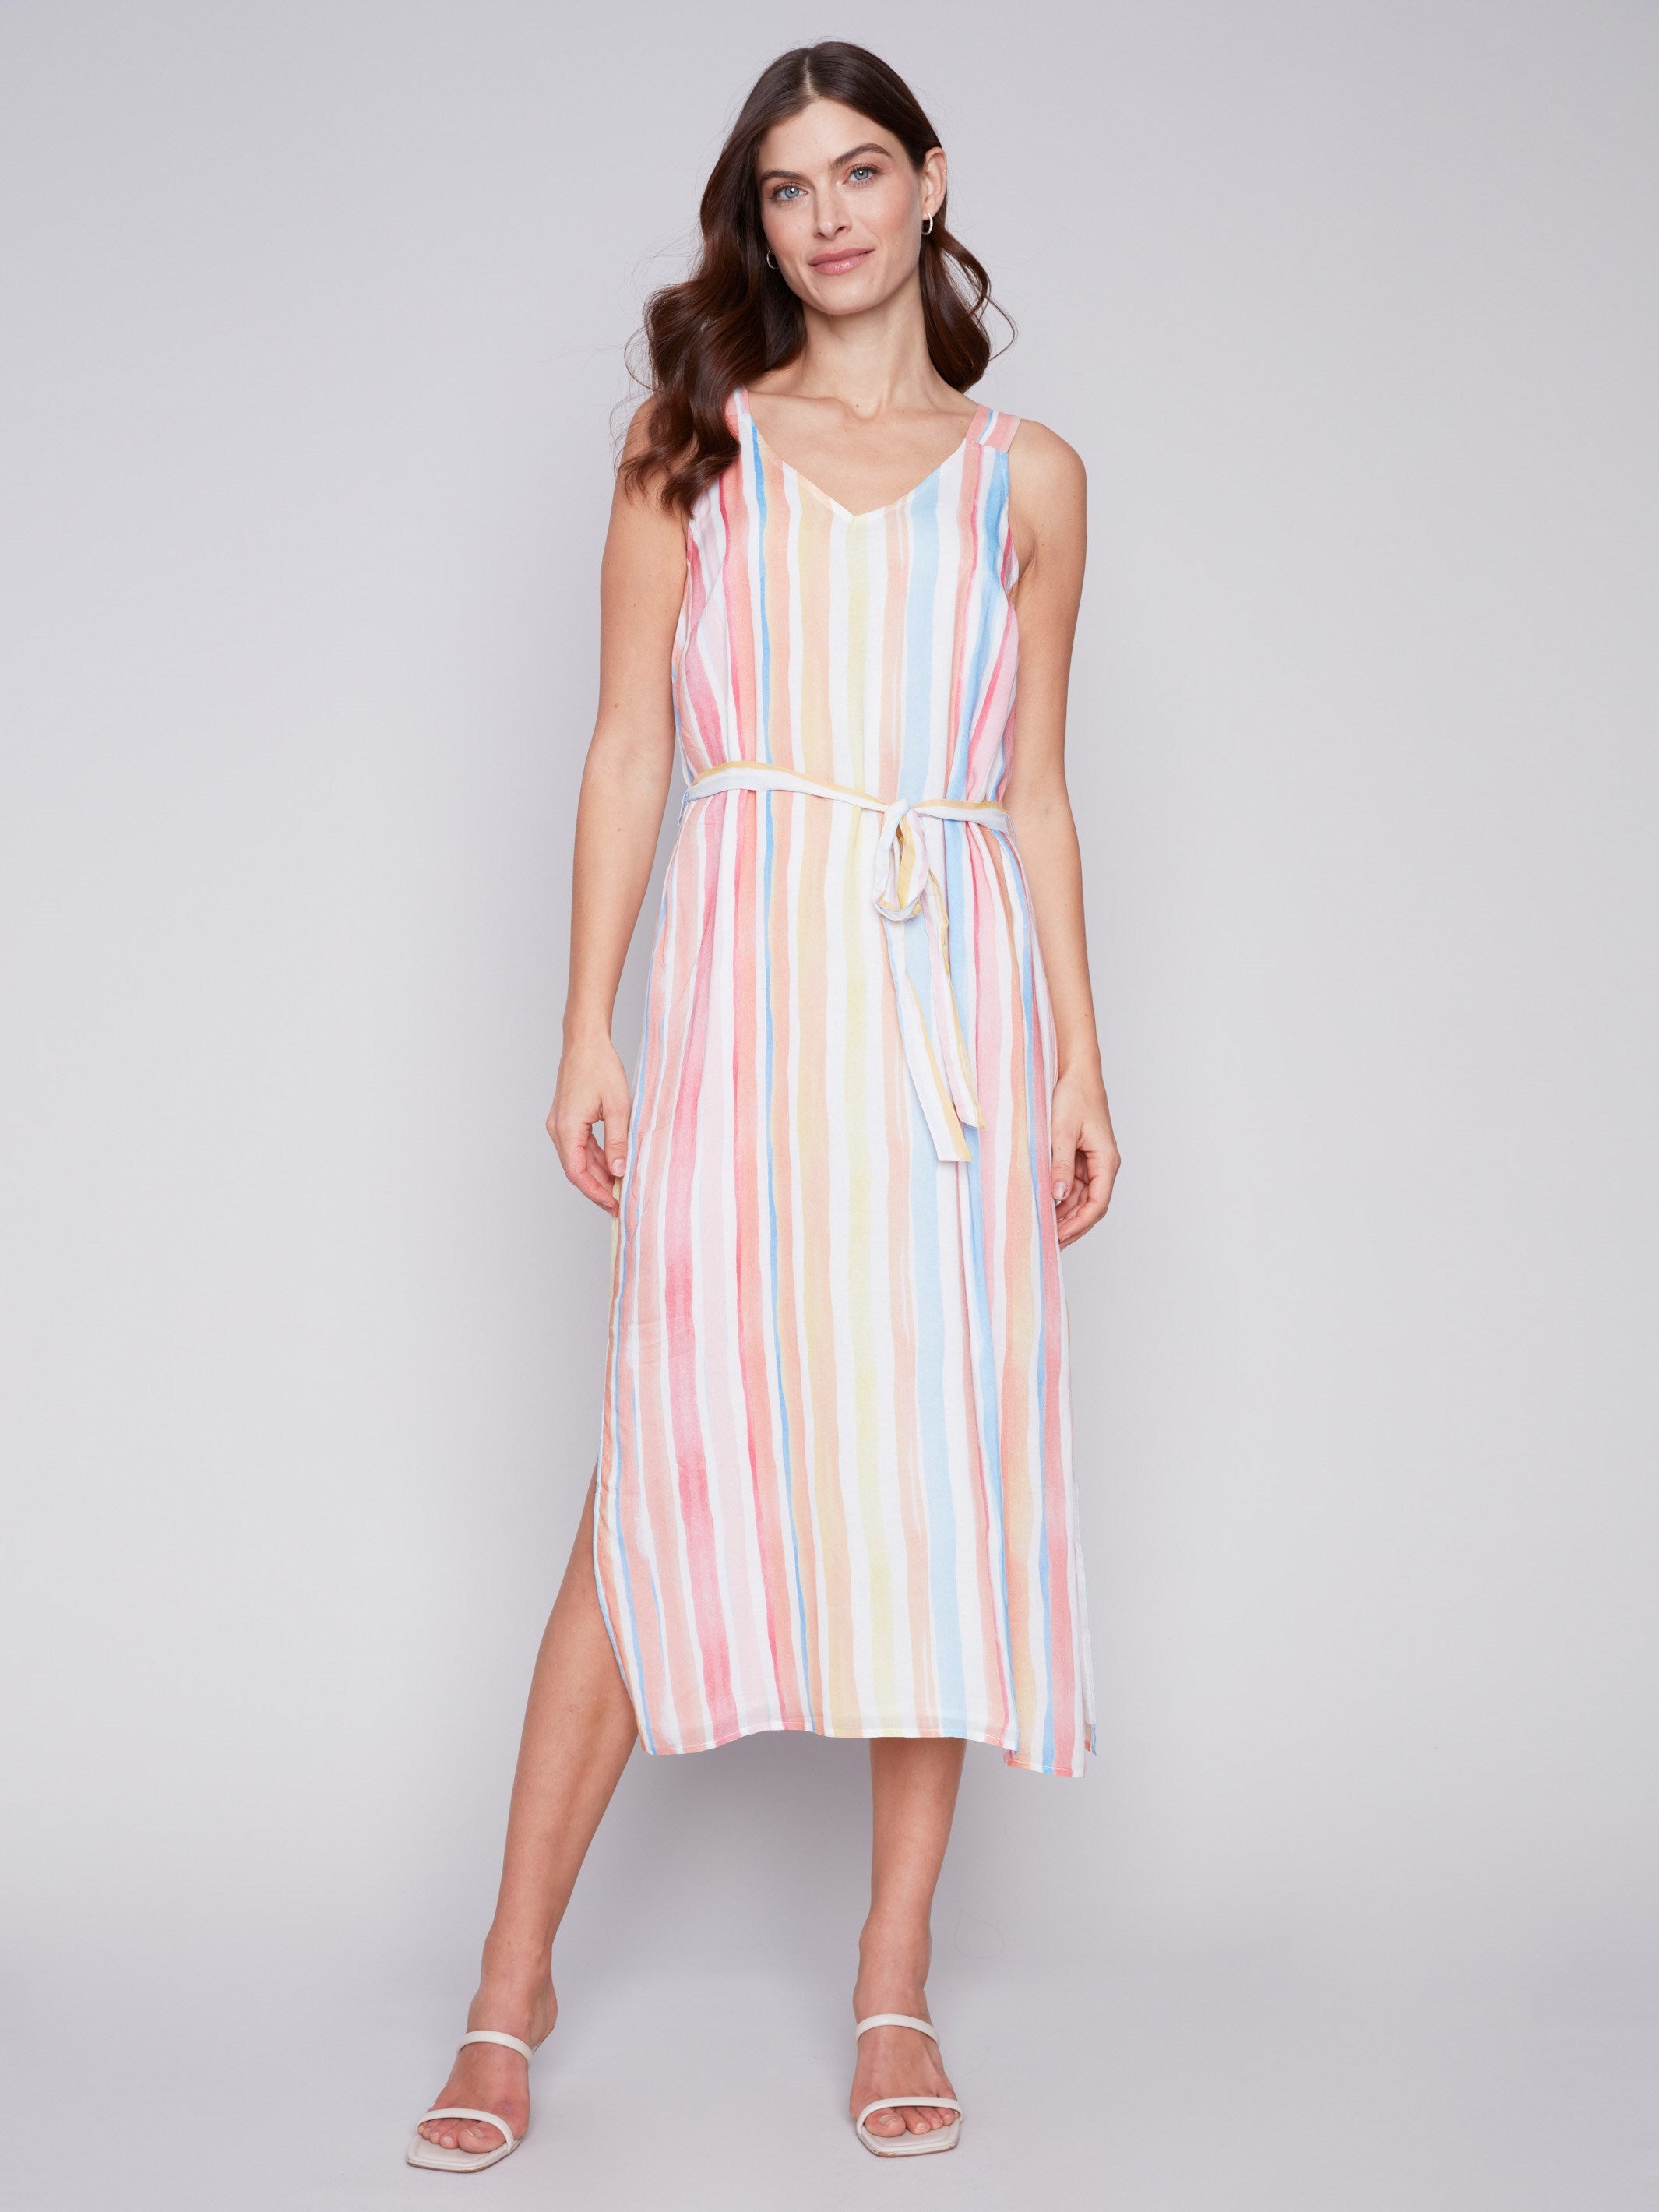 Charlie B Printed Chiffon Dress - Stripes - Image 1